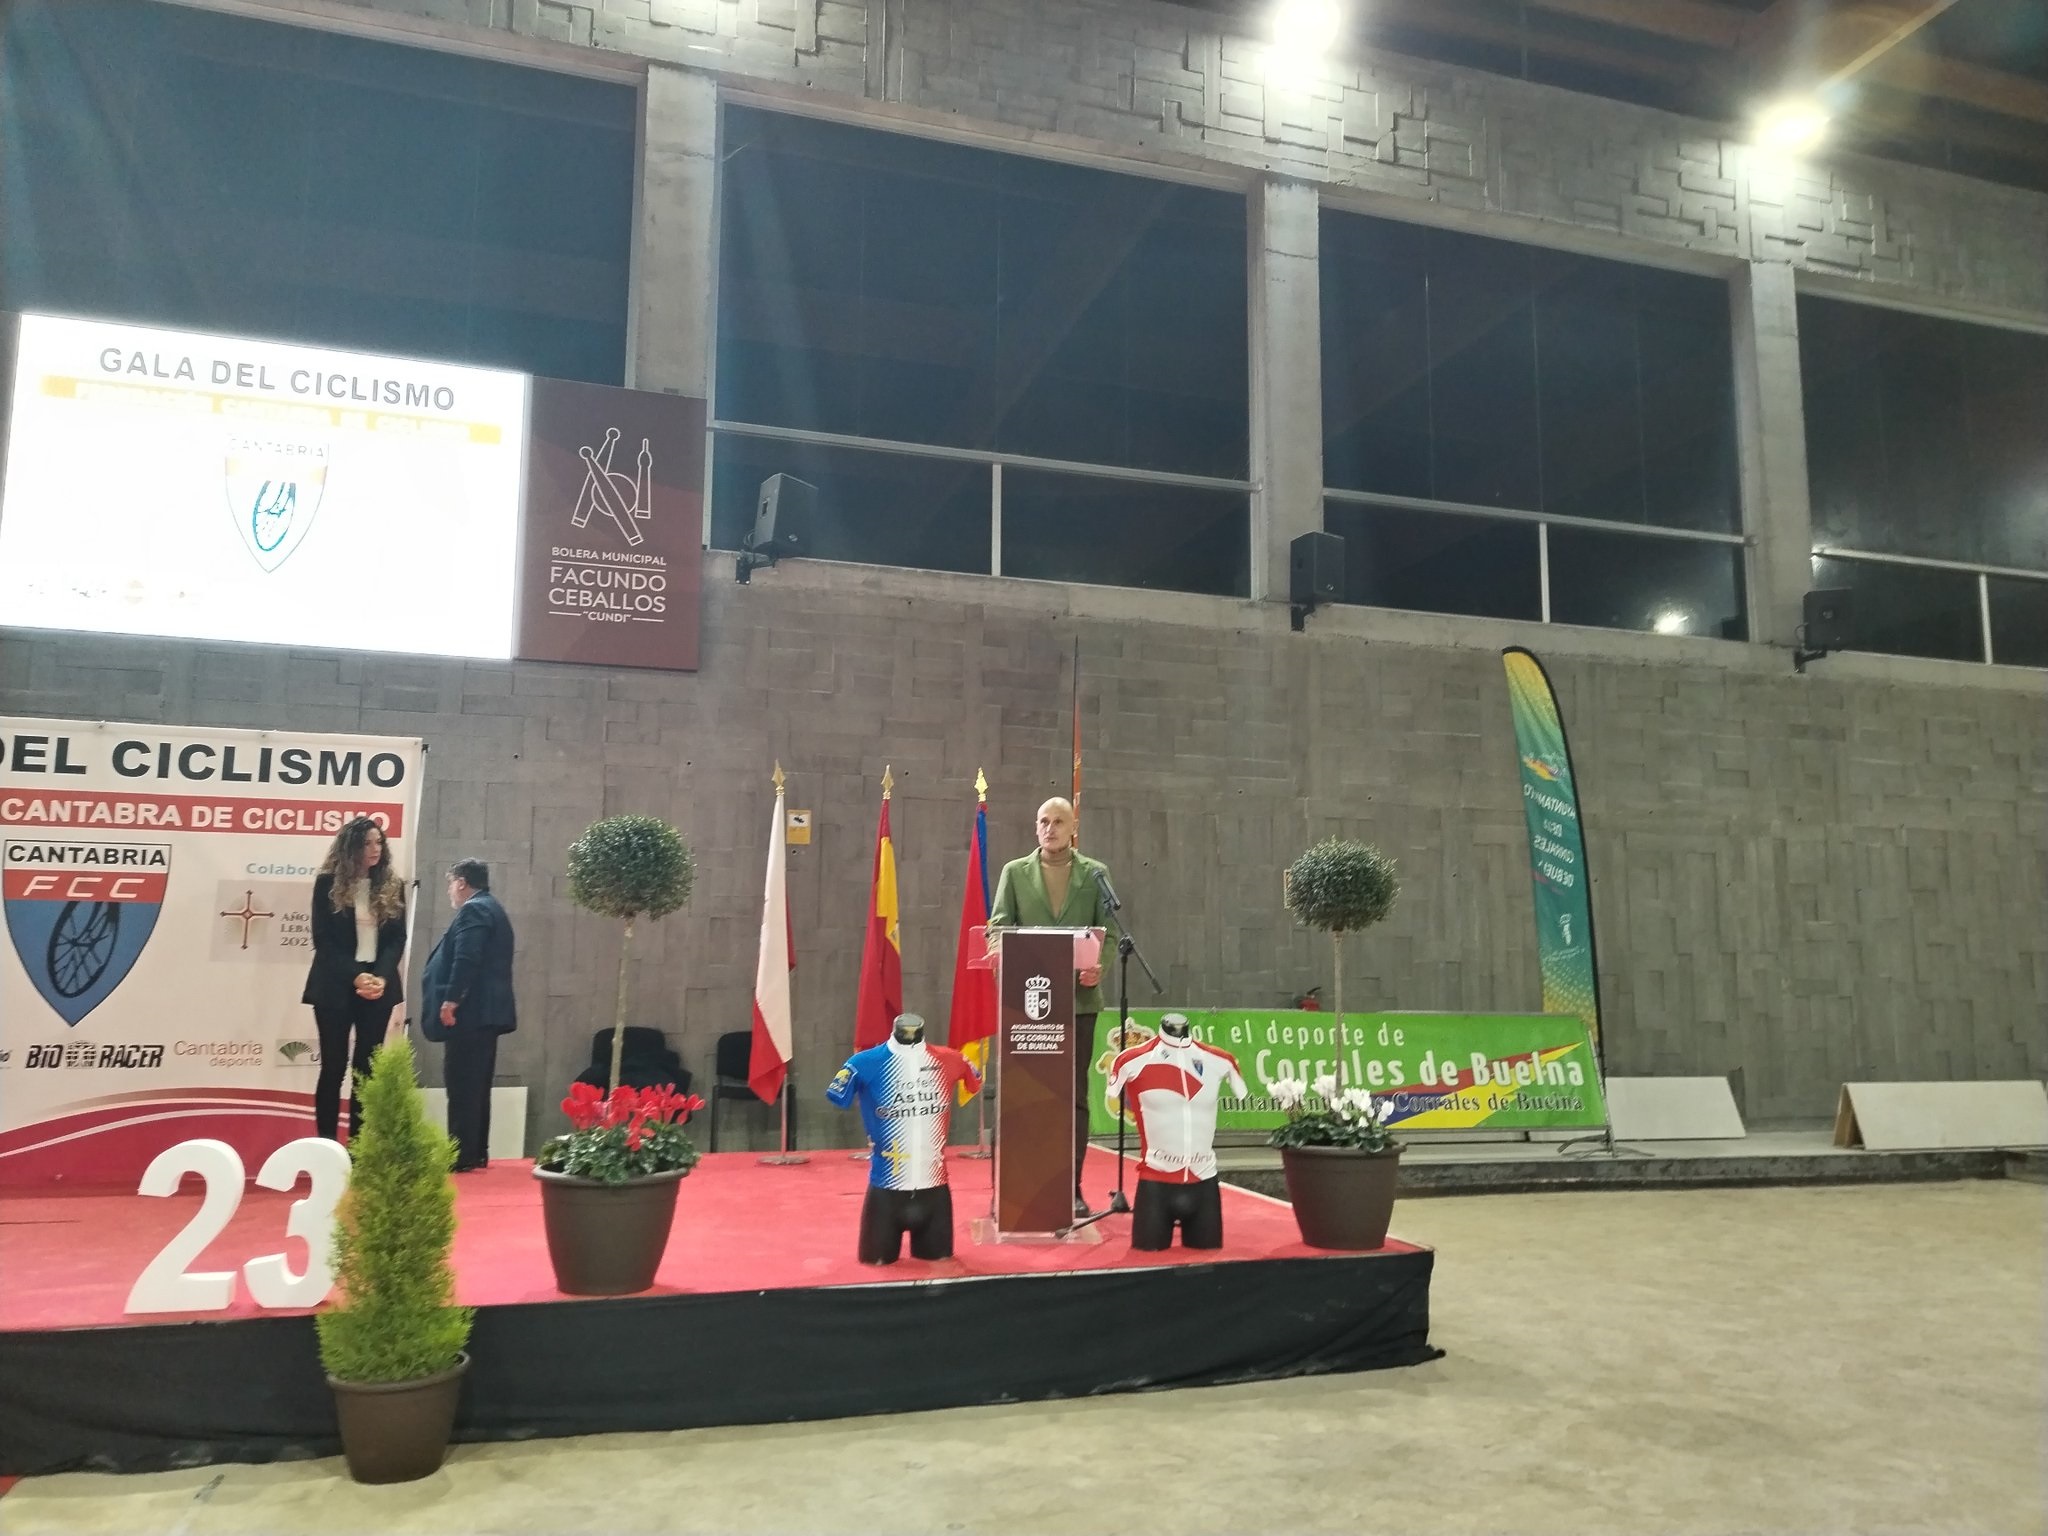 Se celebró la Gala del Ciclismo 2023 en Los Corrales de Buelna